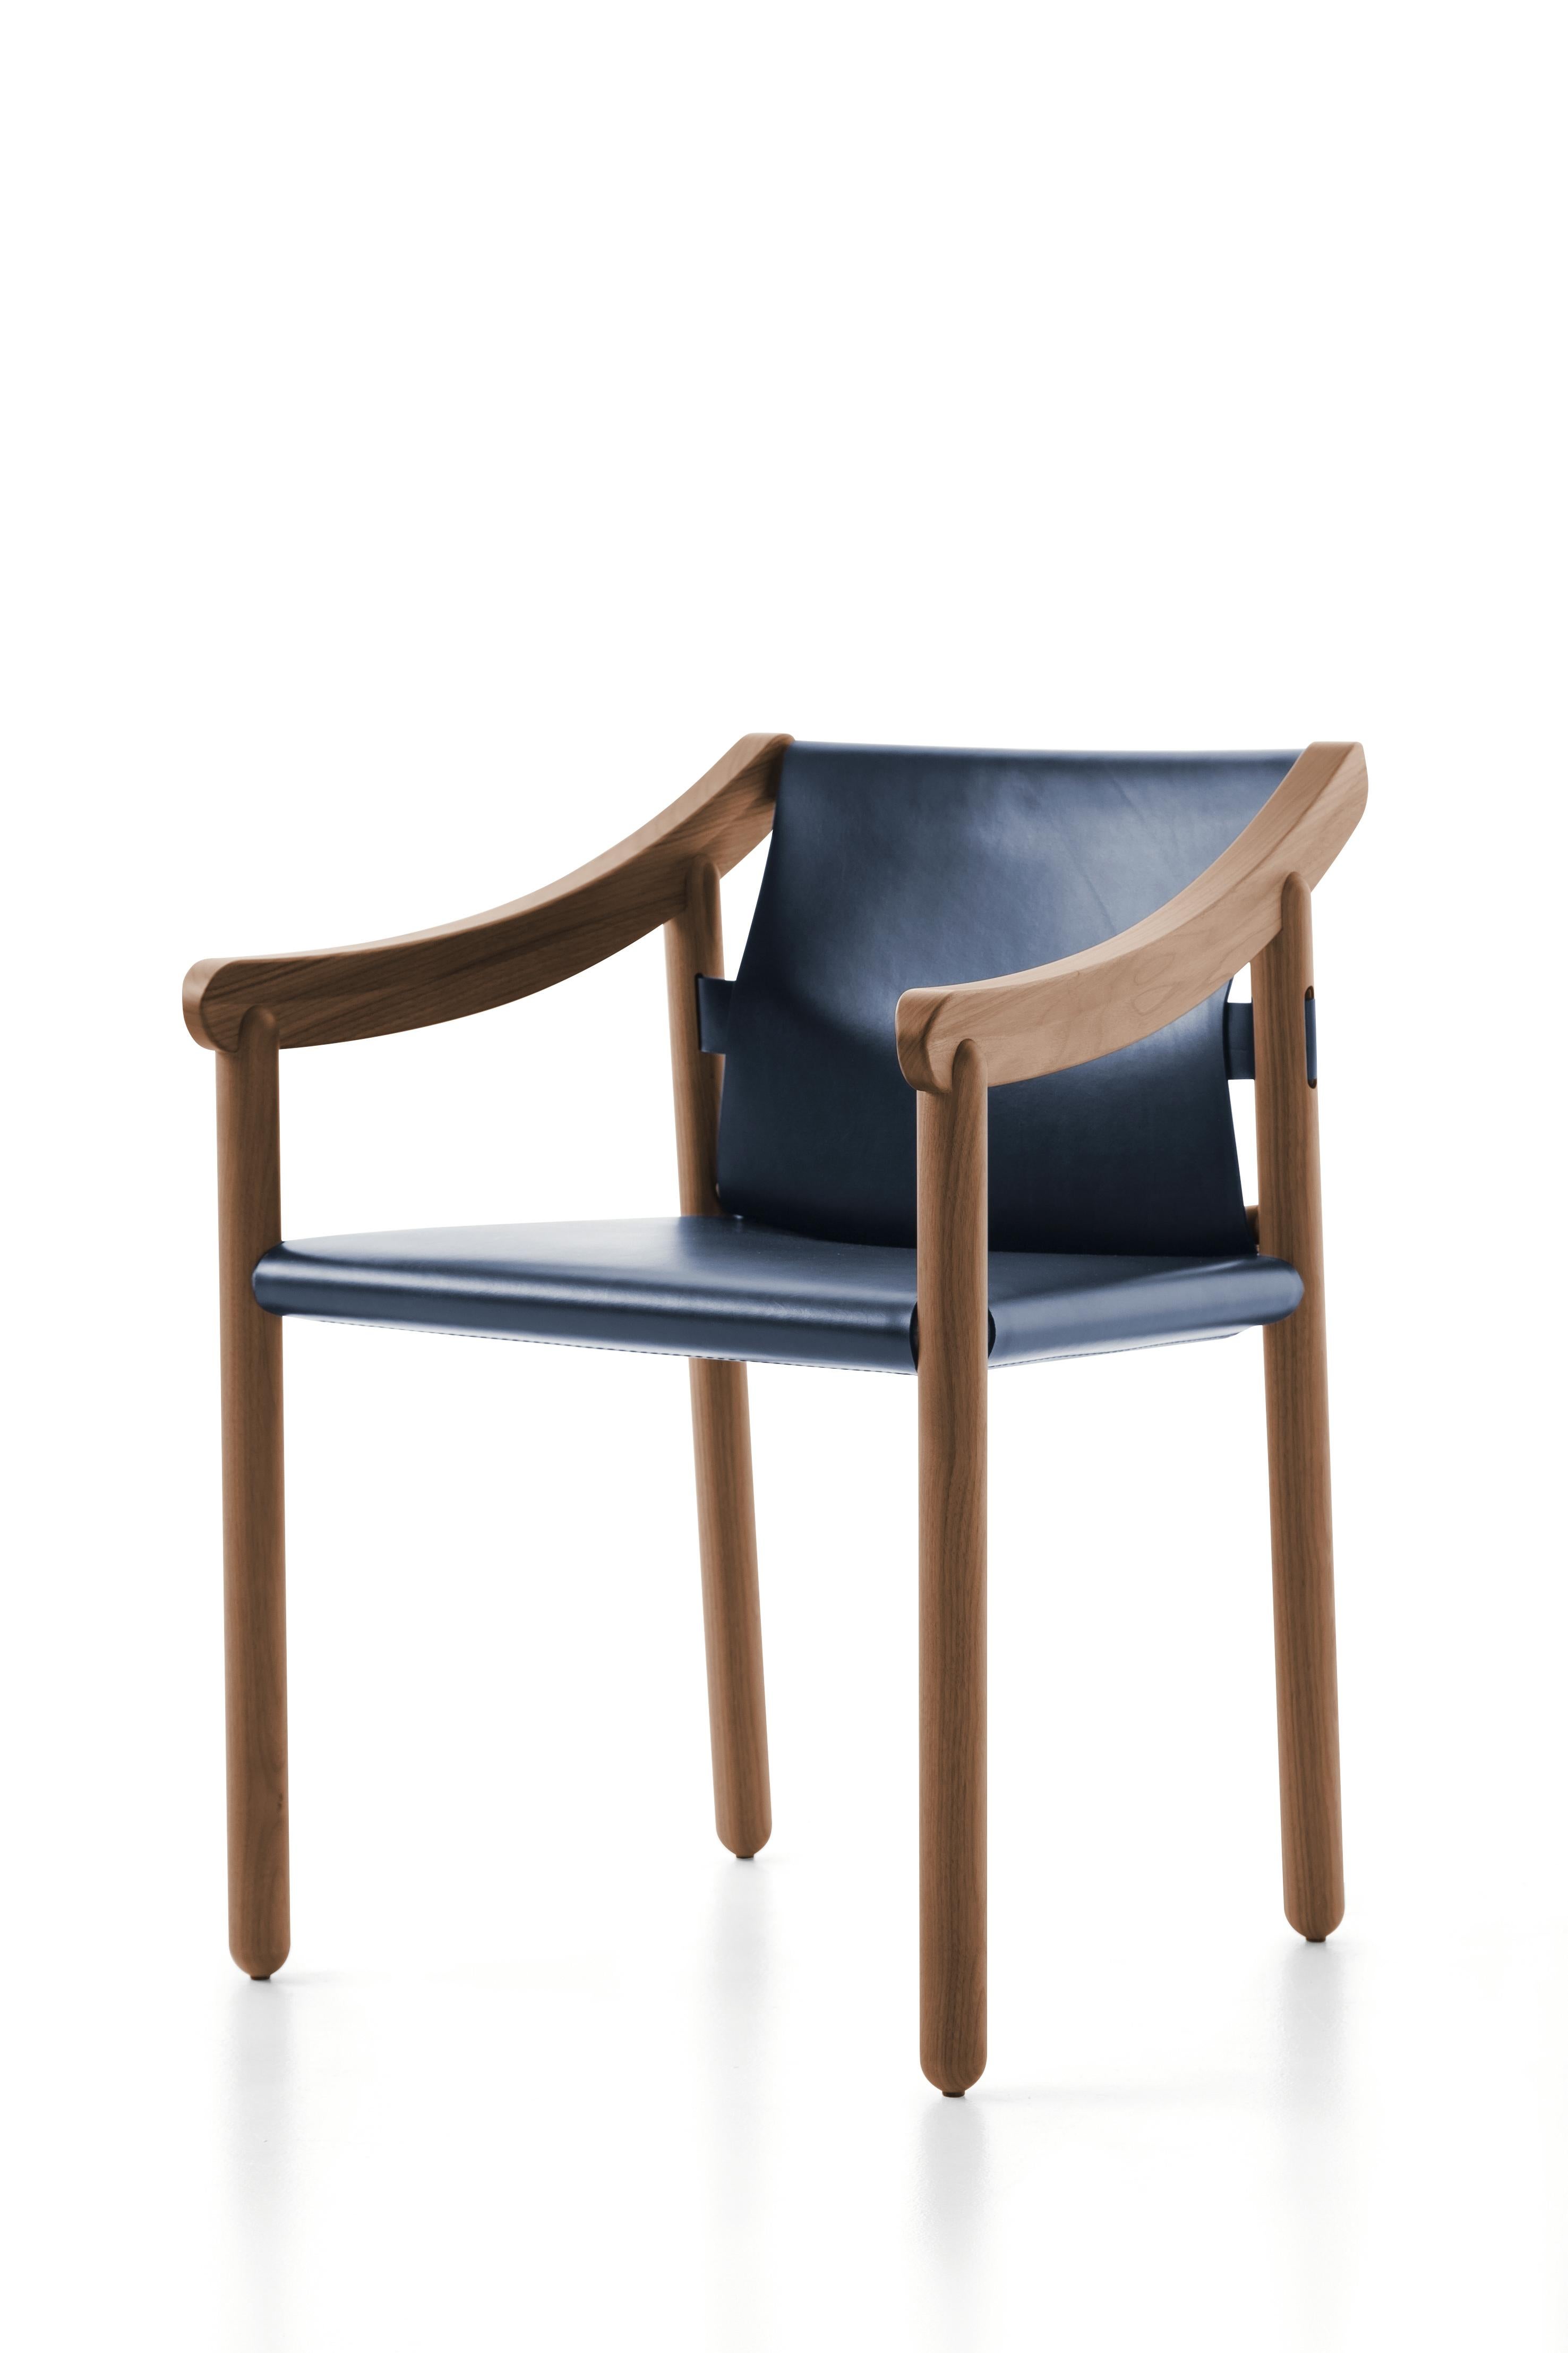 Fauteuil modèle 905 conçu par Vico Magistretti en 1964.
Fabriqué par Cassina en Italie.

Une chaise moderne avec un héritage culturel, expression du génie créatif de Vico Magistretti qui l'a conçue en 1964. 905 est une chaise élégante faite de